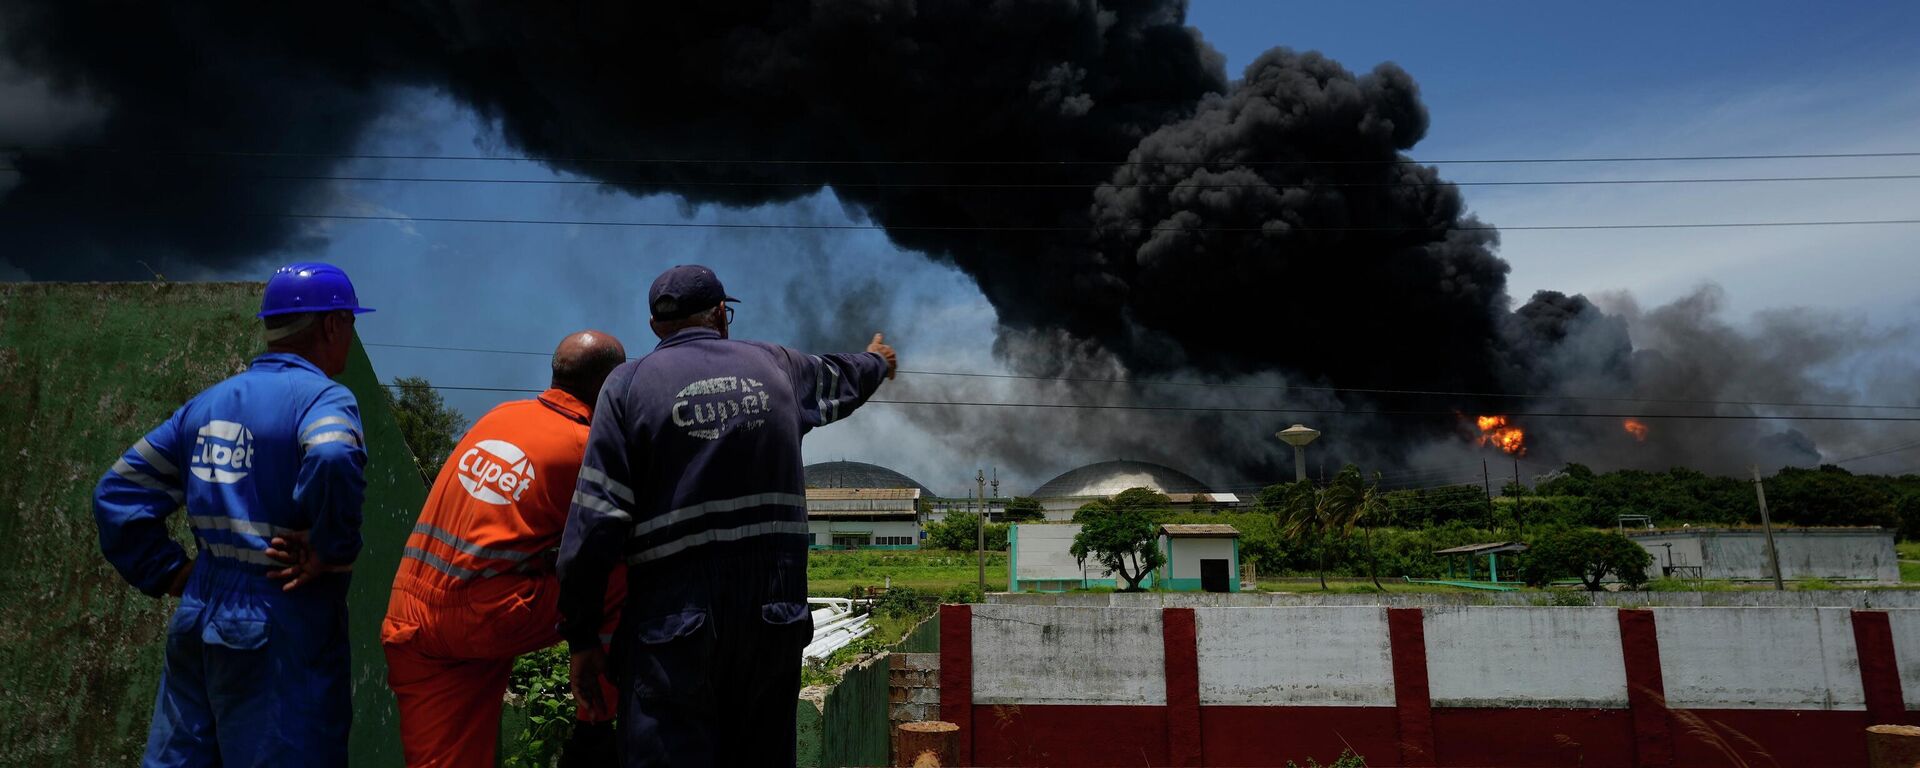 Trabalhadores do Sindicato Petrolífero de Cuba (CUPET, sigla em espanhol) observam uma enorme nuvem de fumaça que sai de uma instalação de petróleo, que pegou fogo após ser atingida por um raio, enquanto bombeiros trabalham para conter o incêndio, em Matanzas, em Cuba, em 6 de agosto de 2022 - Sputnik Brasil, 1920, 07.08.2022